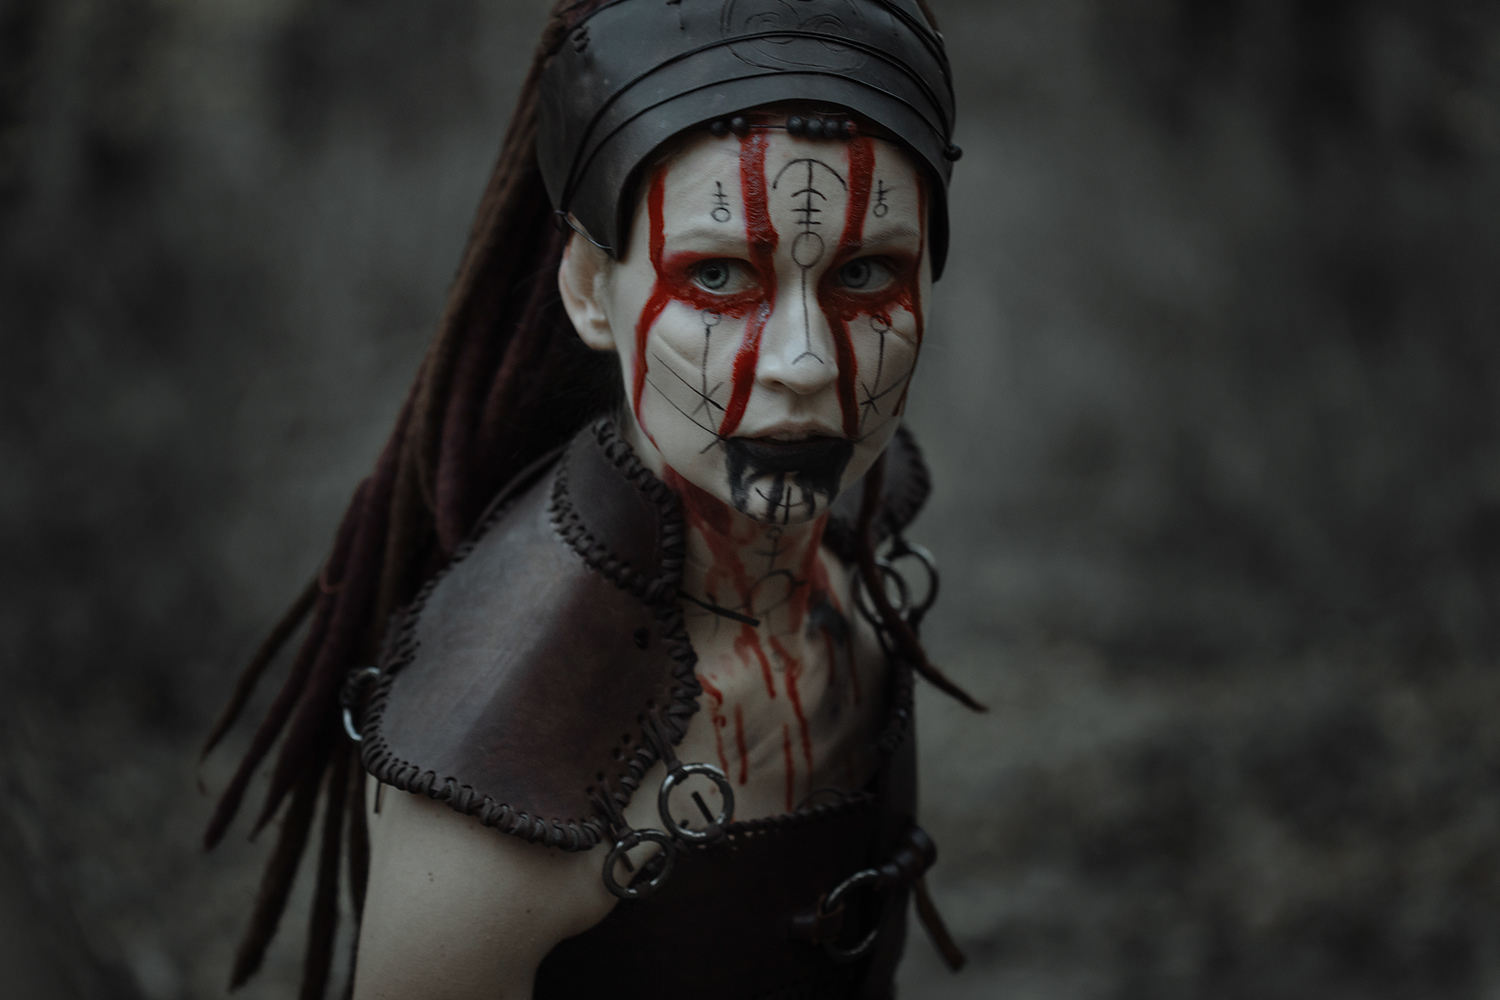 Lina Aster photography - Hellblade 2, Senua's Saga